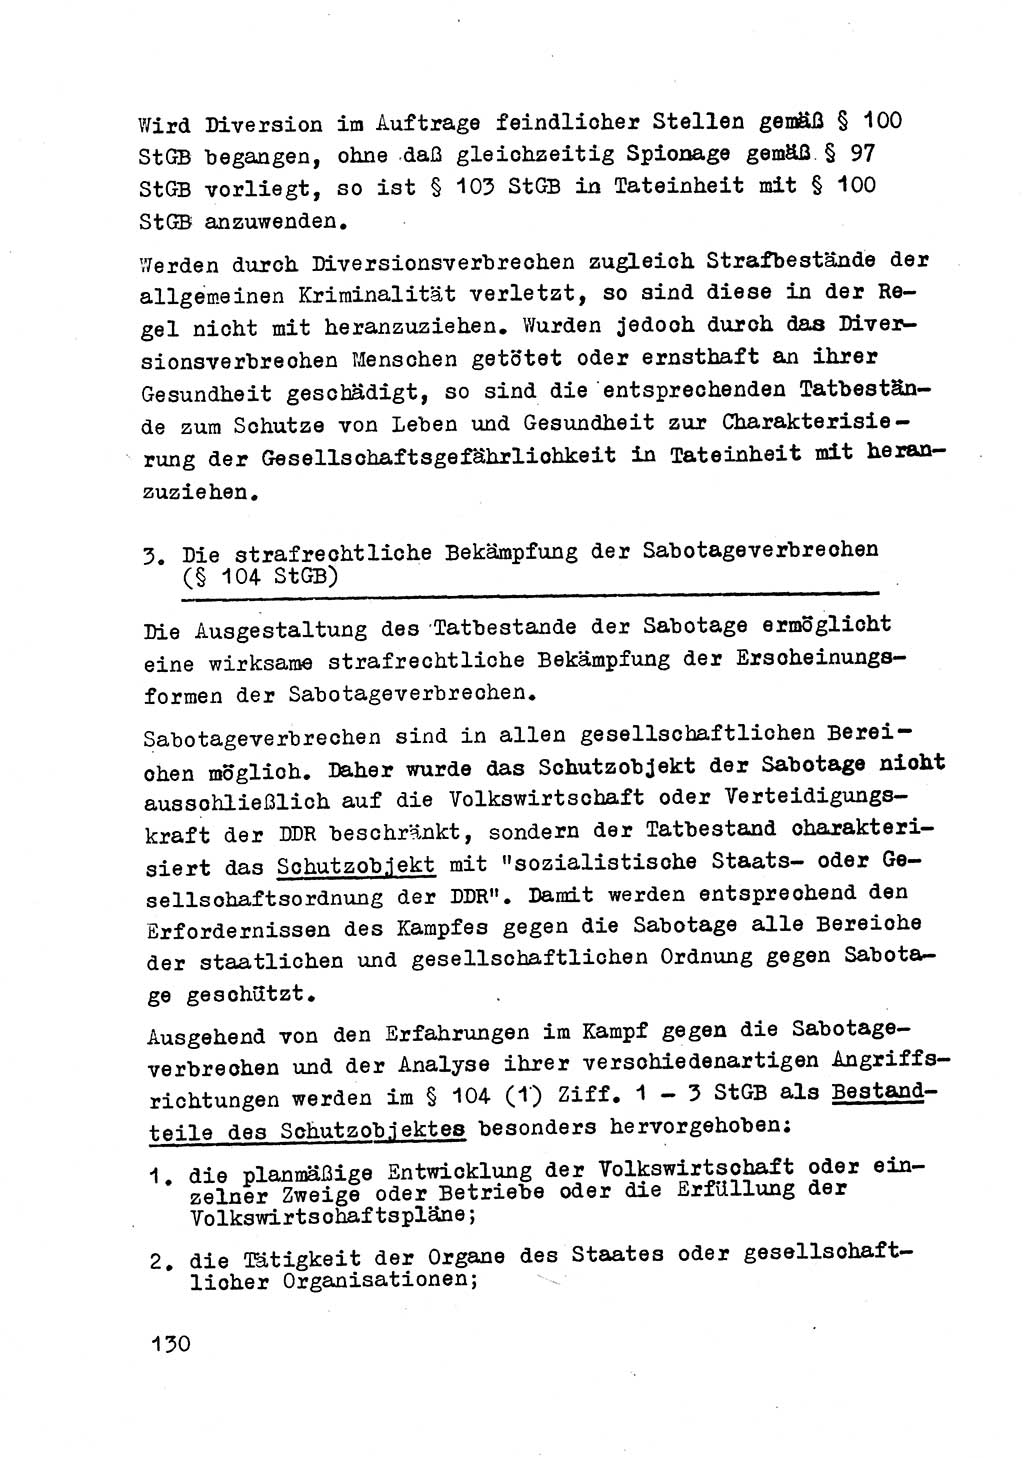 Strafrecht der DDR (Deutsche Demokratische Republik), Besonderer Teil, Lehrmaterial, Heft 2 1969, Seite 130 (Strafr. DDR BT Lehrmat. H. 2 1969, S. 130)